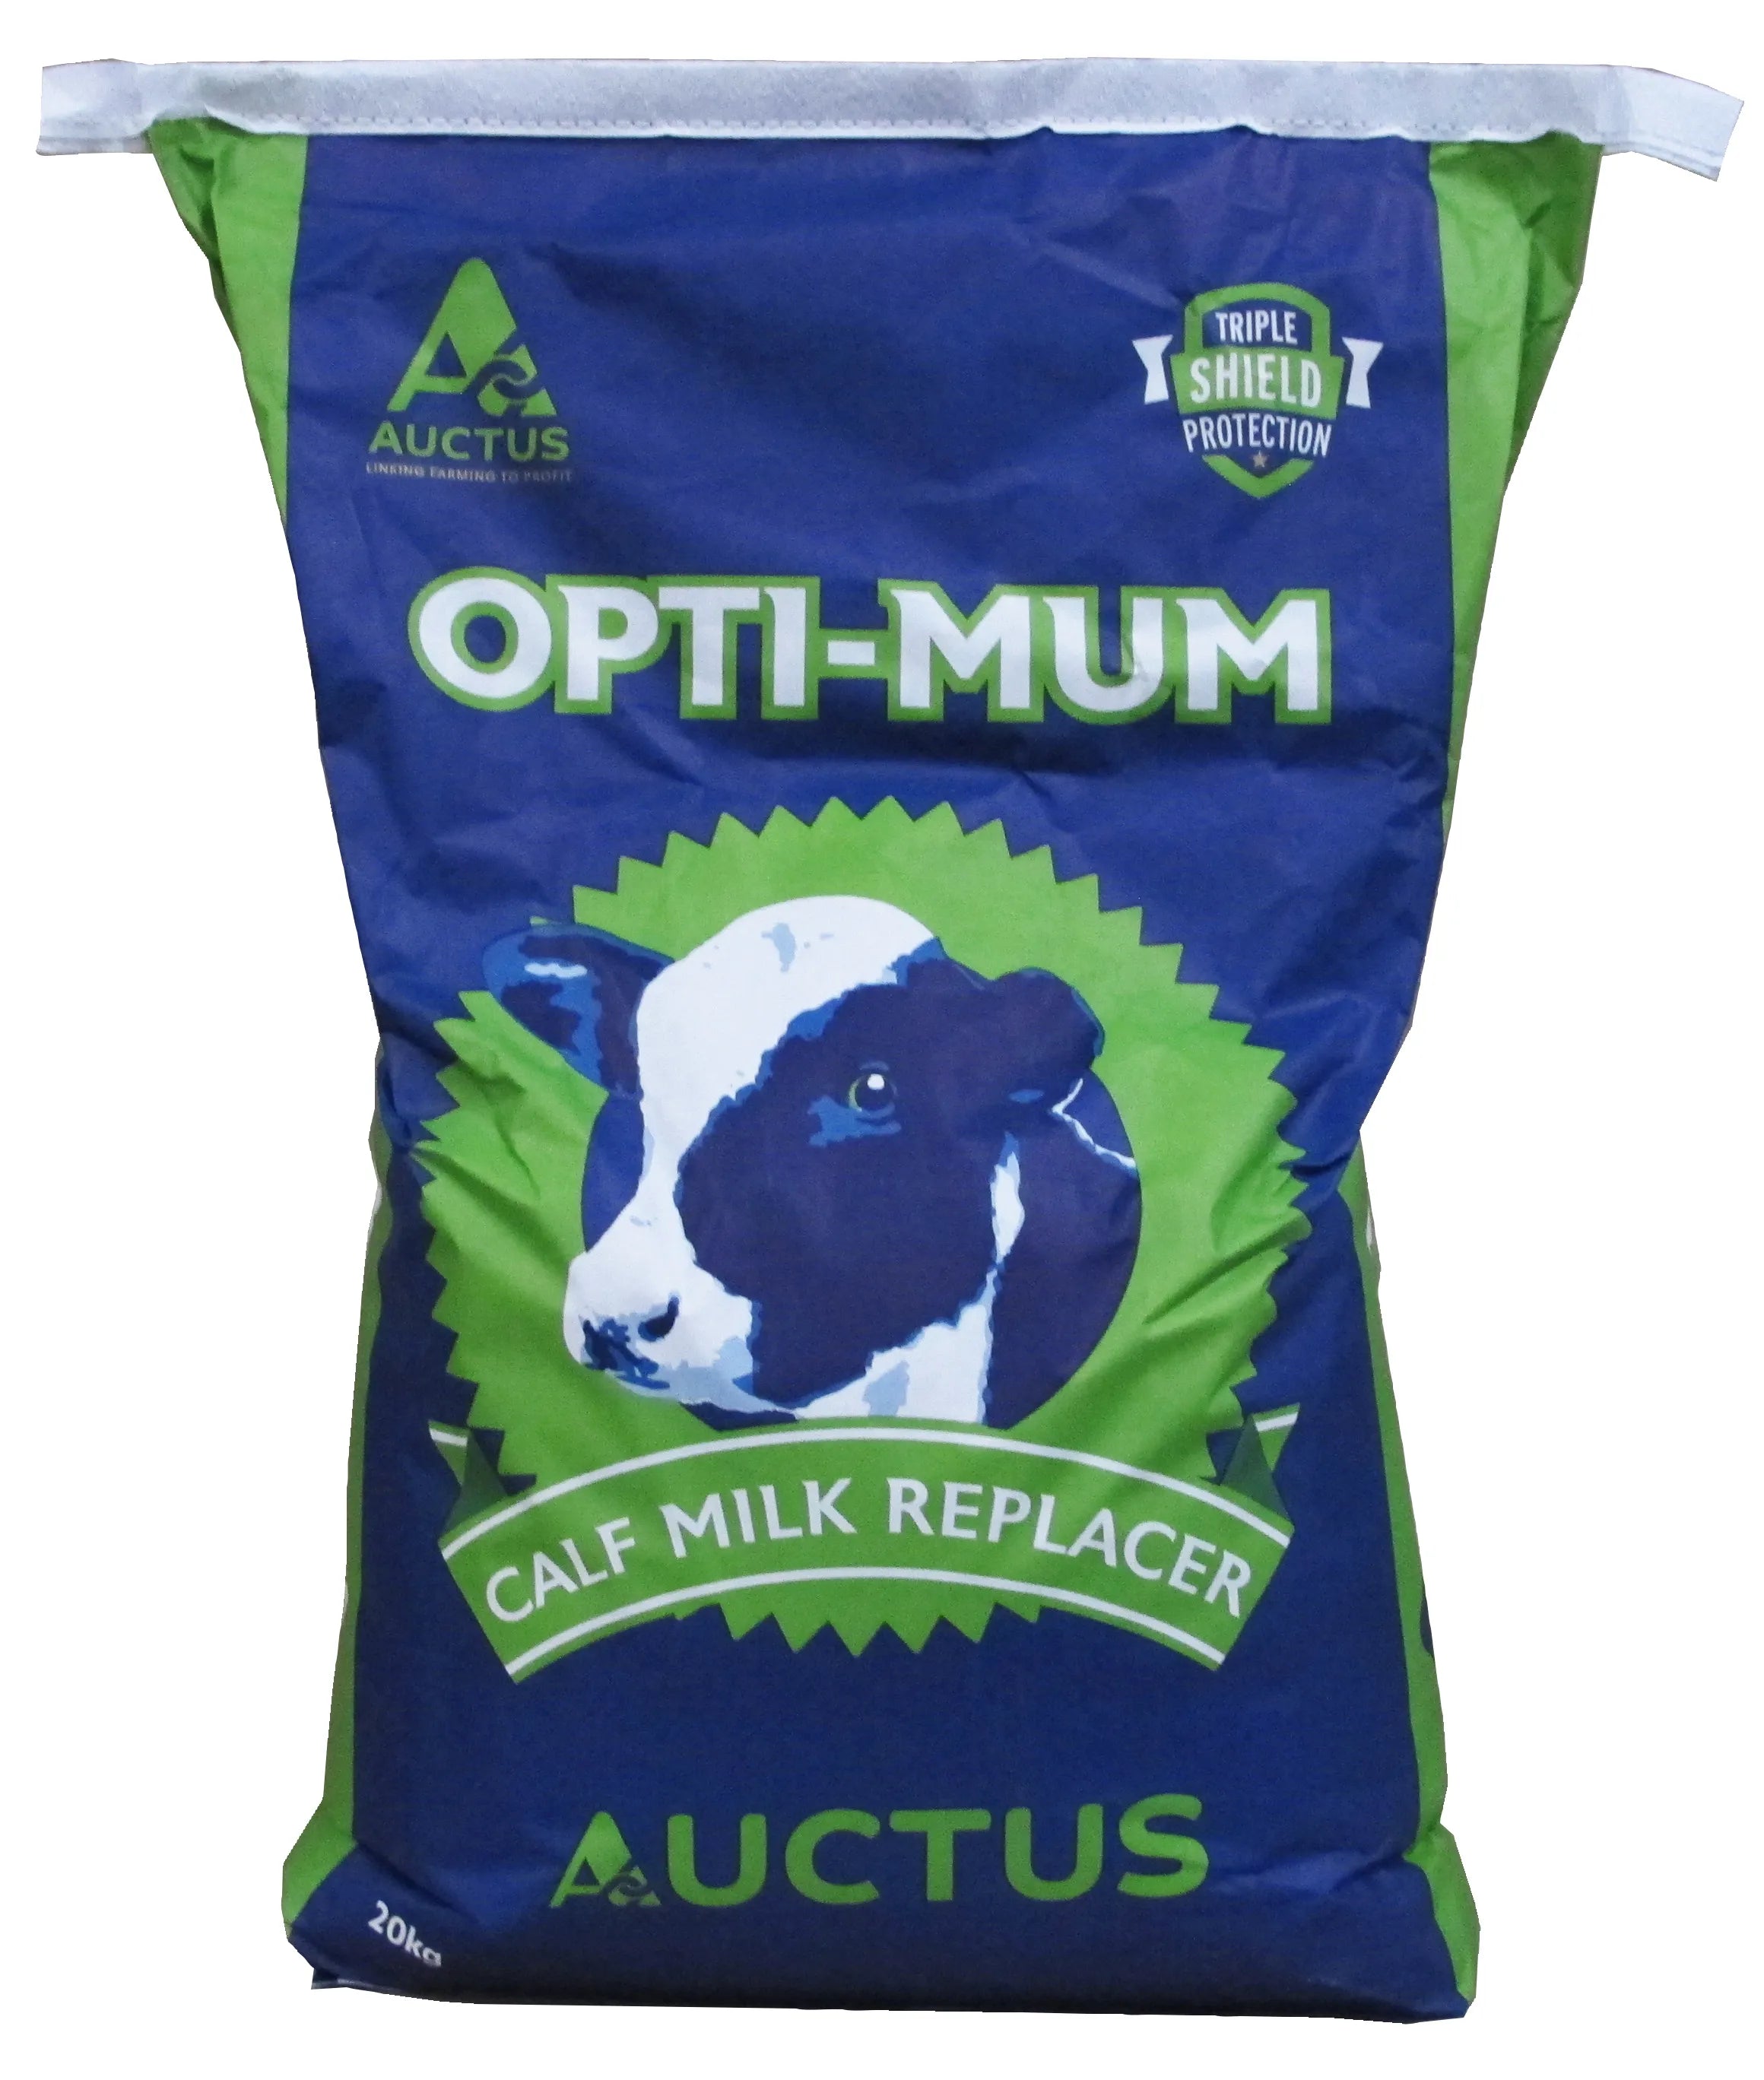 Auctus Opti-Mum Milk Replacer